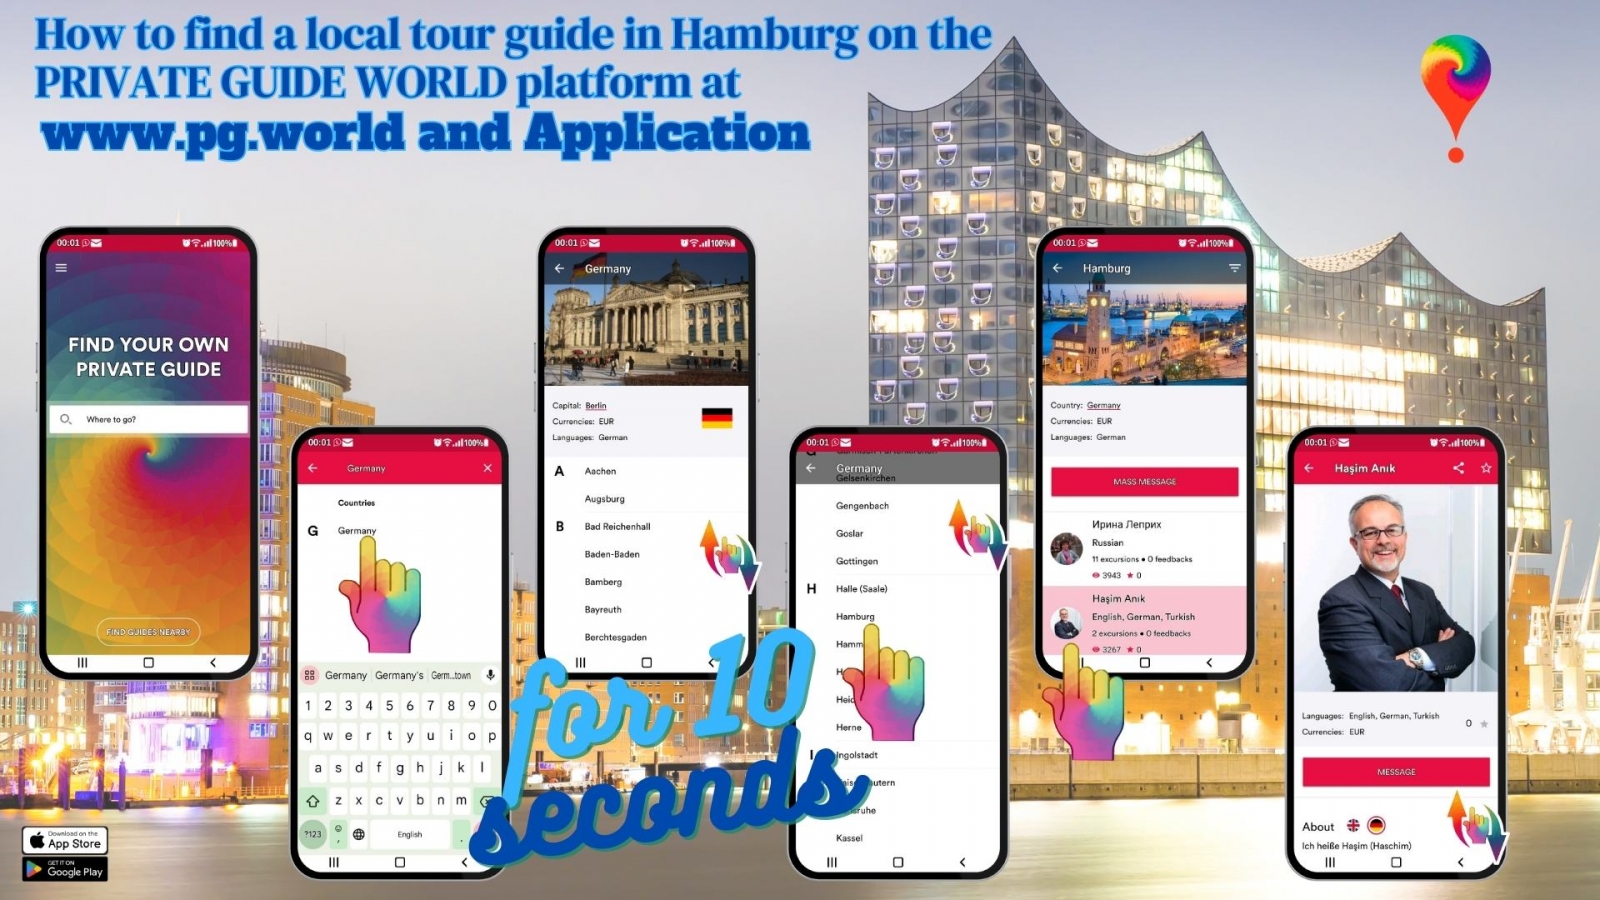 Come trovare una guida turistica locale ad Amburgo sulla piattaforma PRIVATE GUIDE WORLD